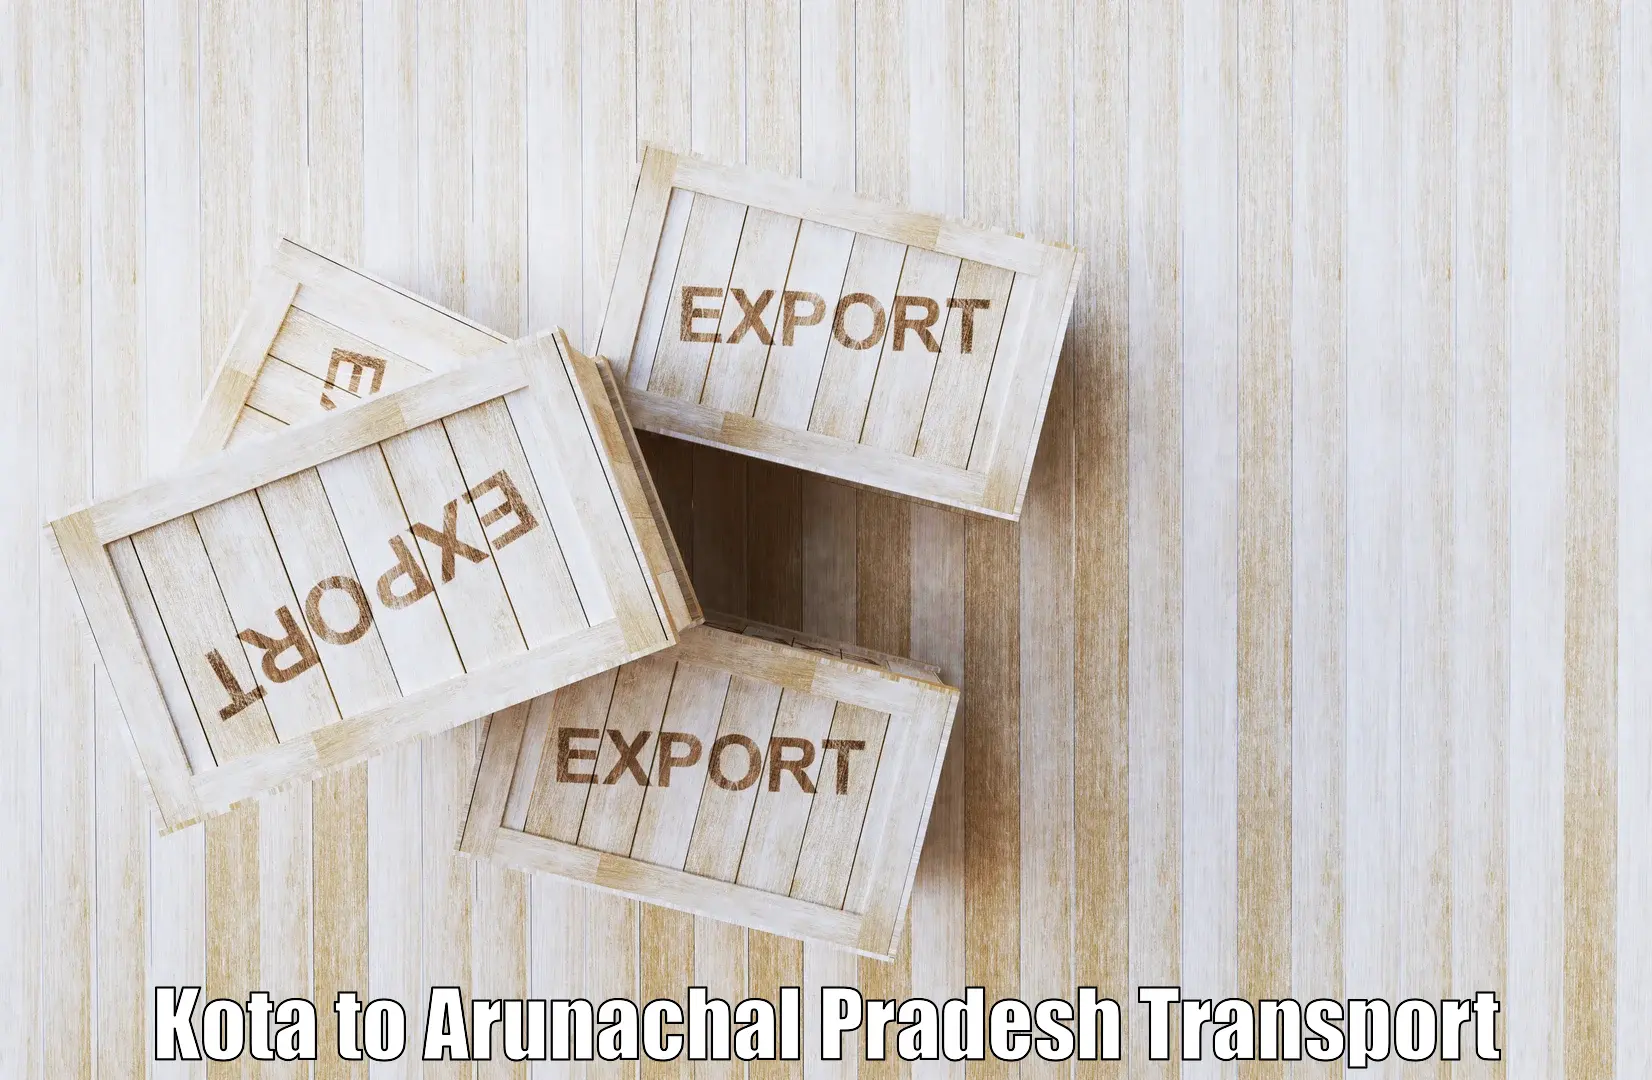 Online transport Kota to Arunachal Pradesh